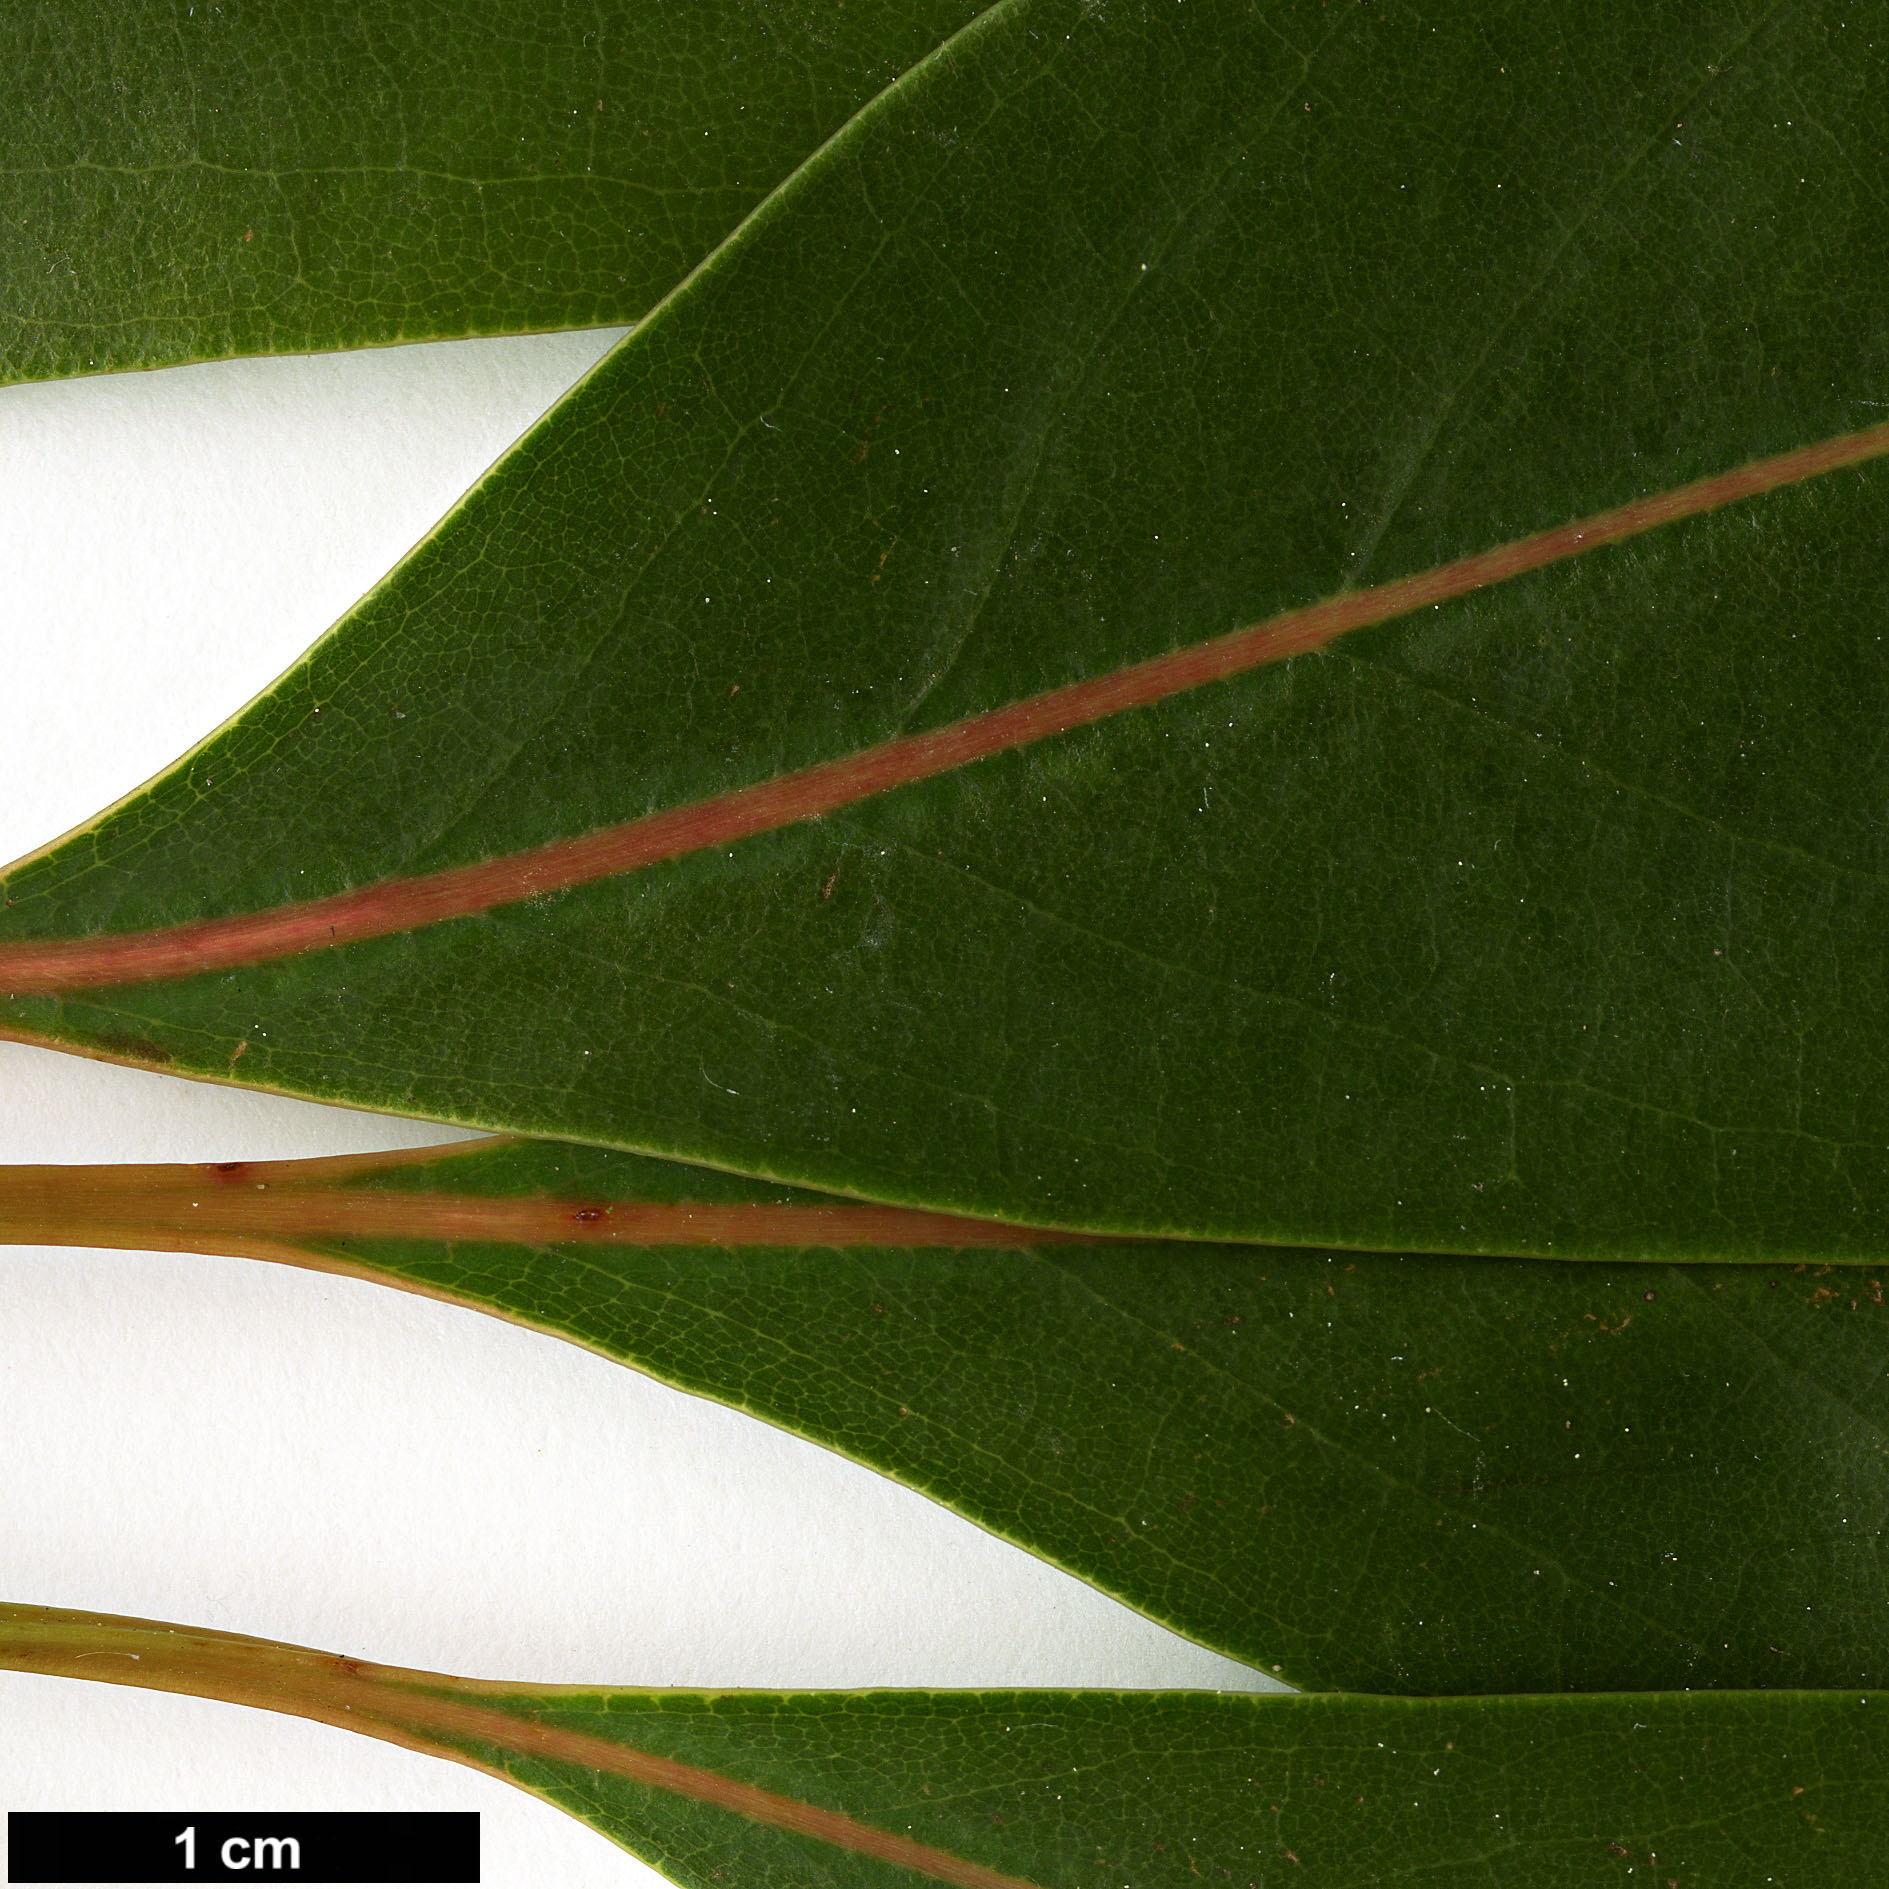 High resolution image: Family: Lauraceae - Genus: Persea - Taxon: ichangensis - SpeciesSub: var. leiophylla